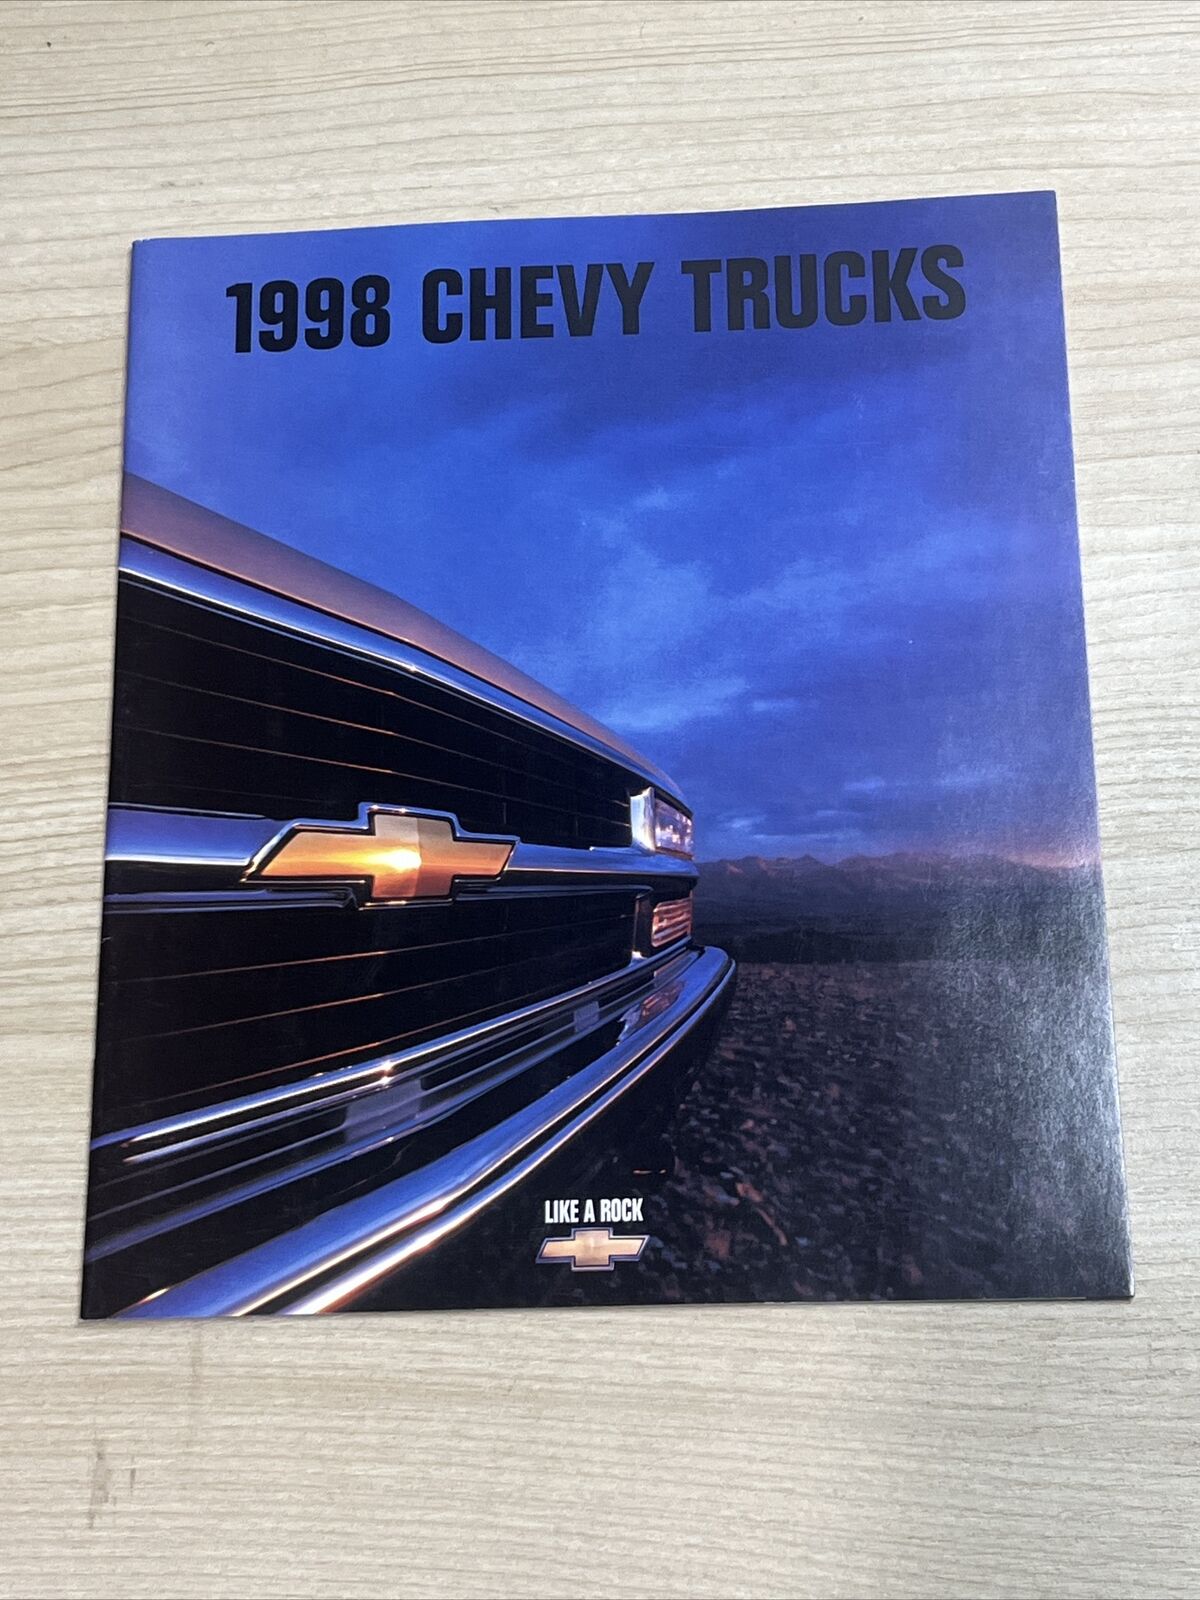 1998 Chevrolet Truck 28-page Sales Brochure Catalog - Silverado Tahoe S-10